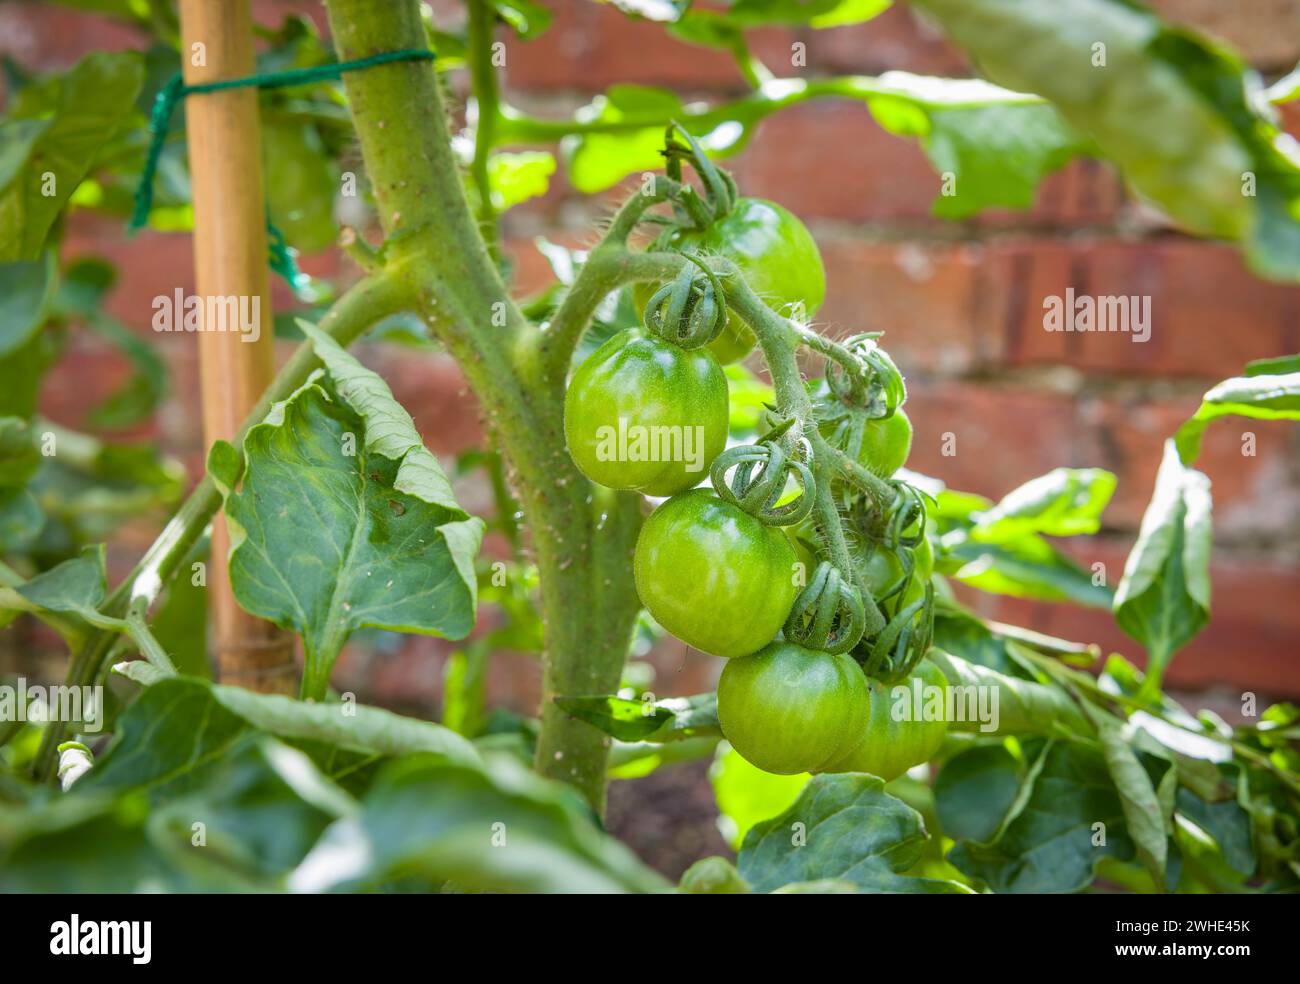 Grüne Tomaten, die im Freien auf einer Sorte ailsa craig wachsen, unbestimmte (Cordon) Rebsorte in einem britischen Garten. Reifung unreifer Tomaten. Stockfoto